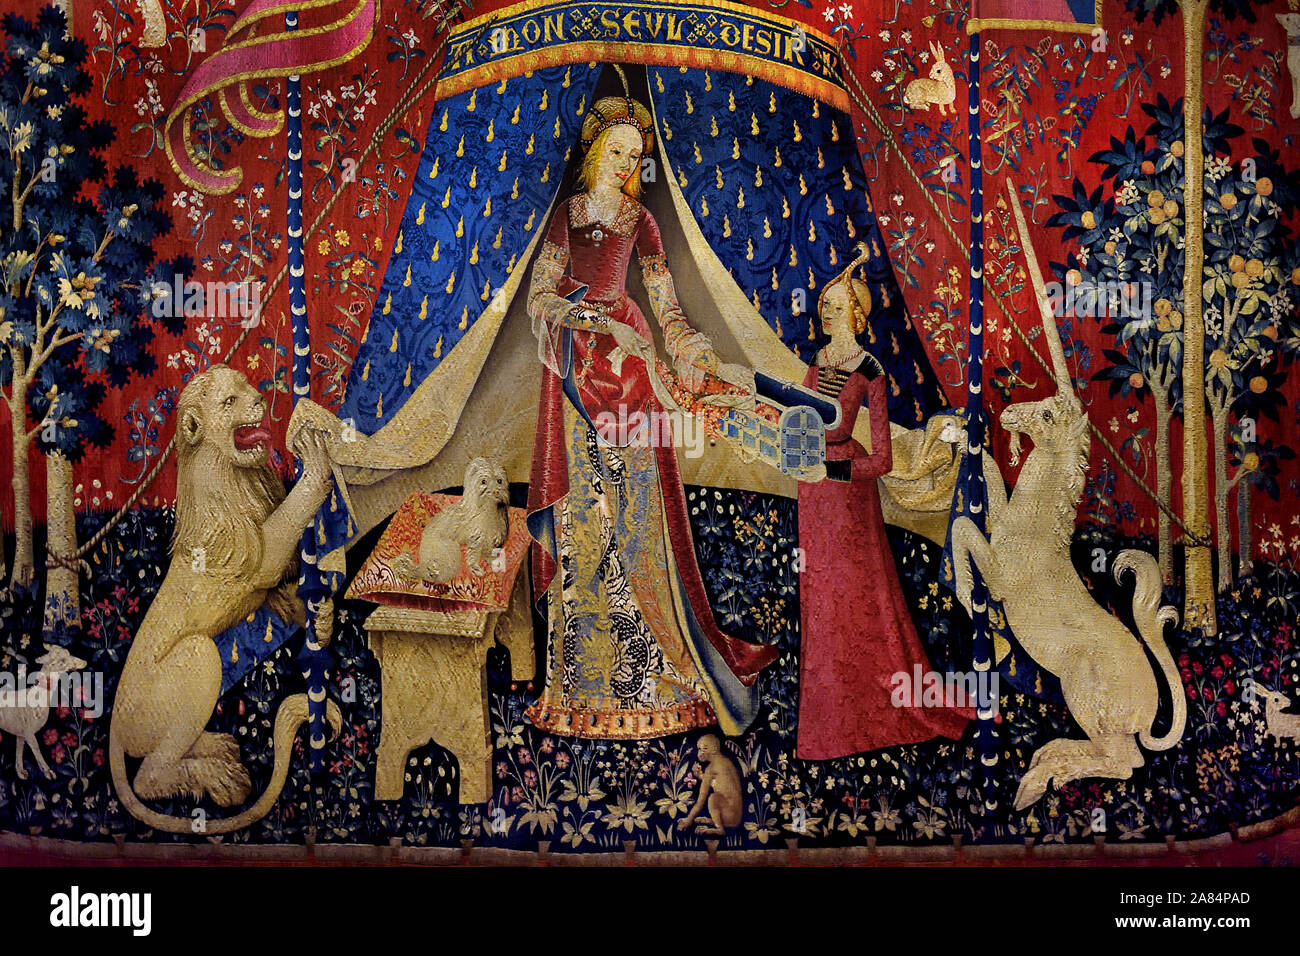 Mon Seul Desir - Il mio solo desiderio 1500 Annuncio del XV secolo dalla signora e la serie di Unicorn. lana e seta, 377 x 473. Parigi. La Francia. Il francese. Foto Stock